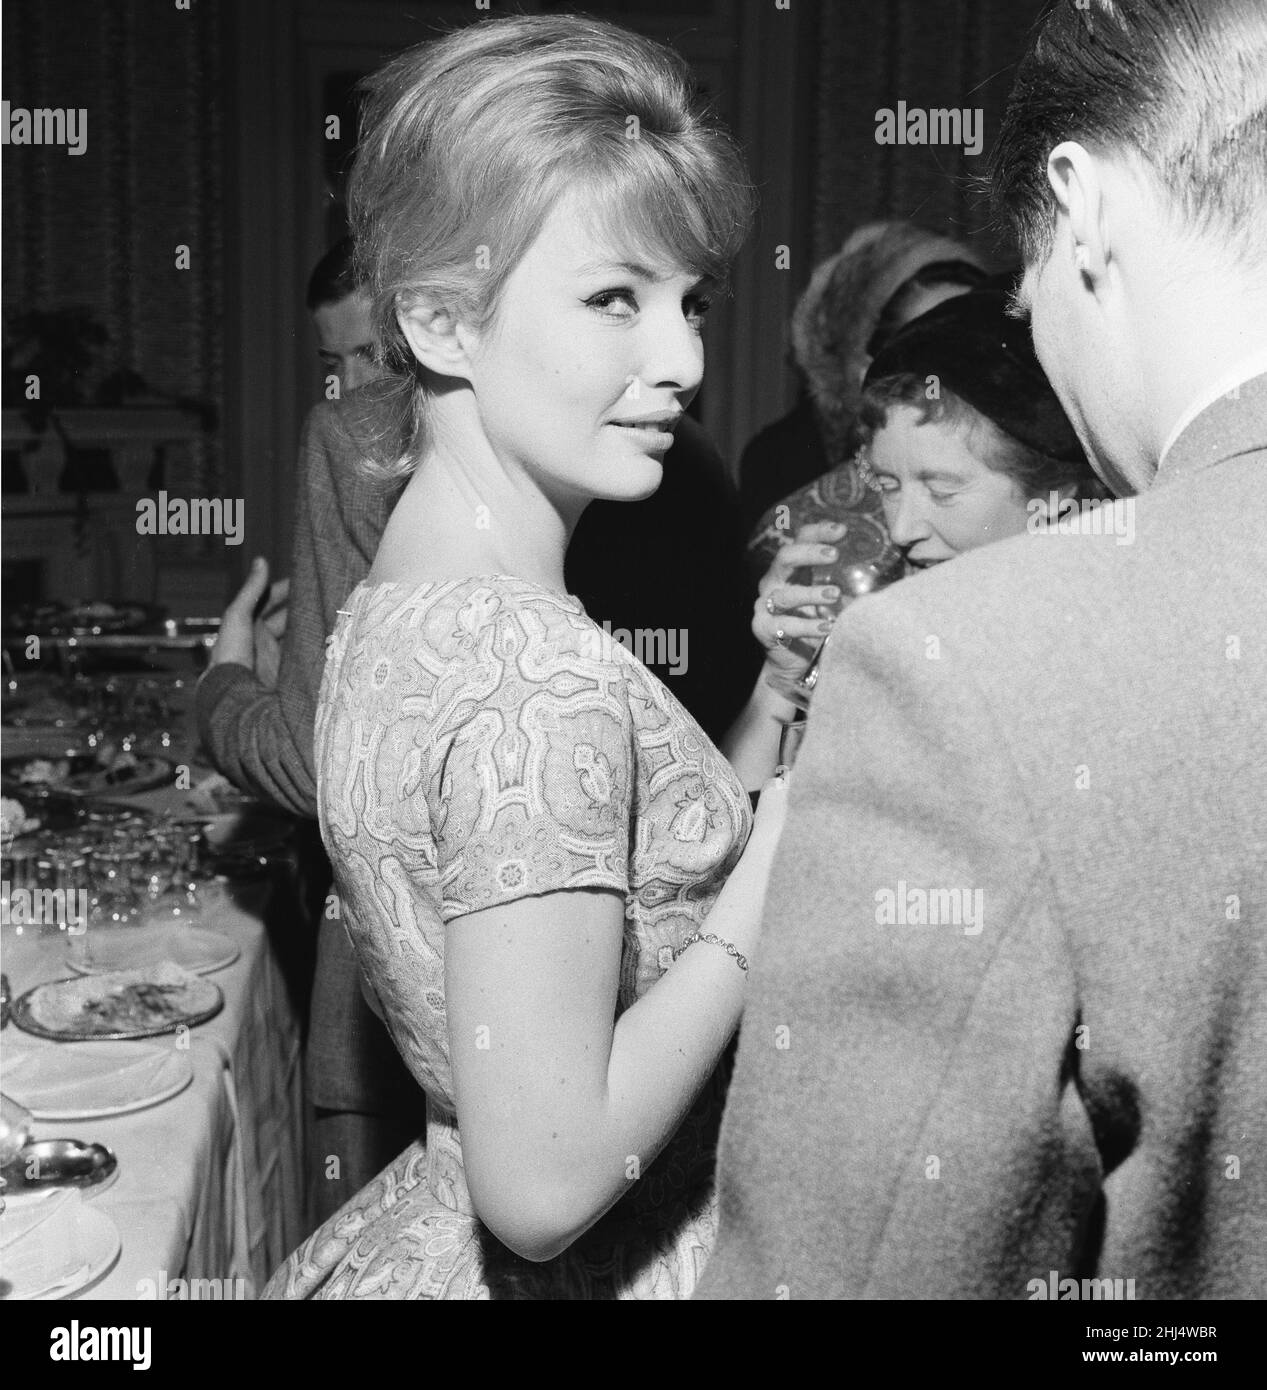 Annette Stroyberg, actrice danoise, à Londres, dimanche 14th décembre 1958.Annette est au Royaume-Uni pour un test d'écran, elle espère un rôle dans le nouveau film les armes de Navarone. Banque D'Images